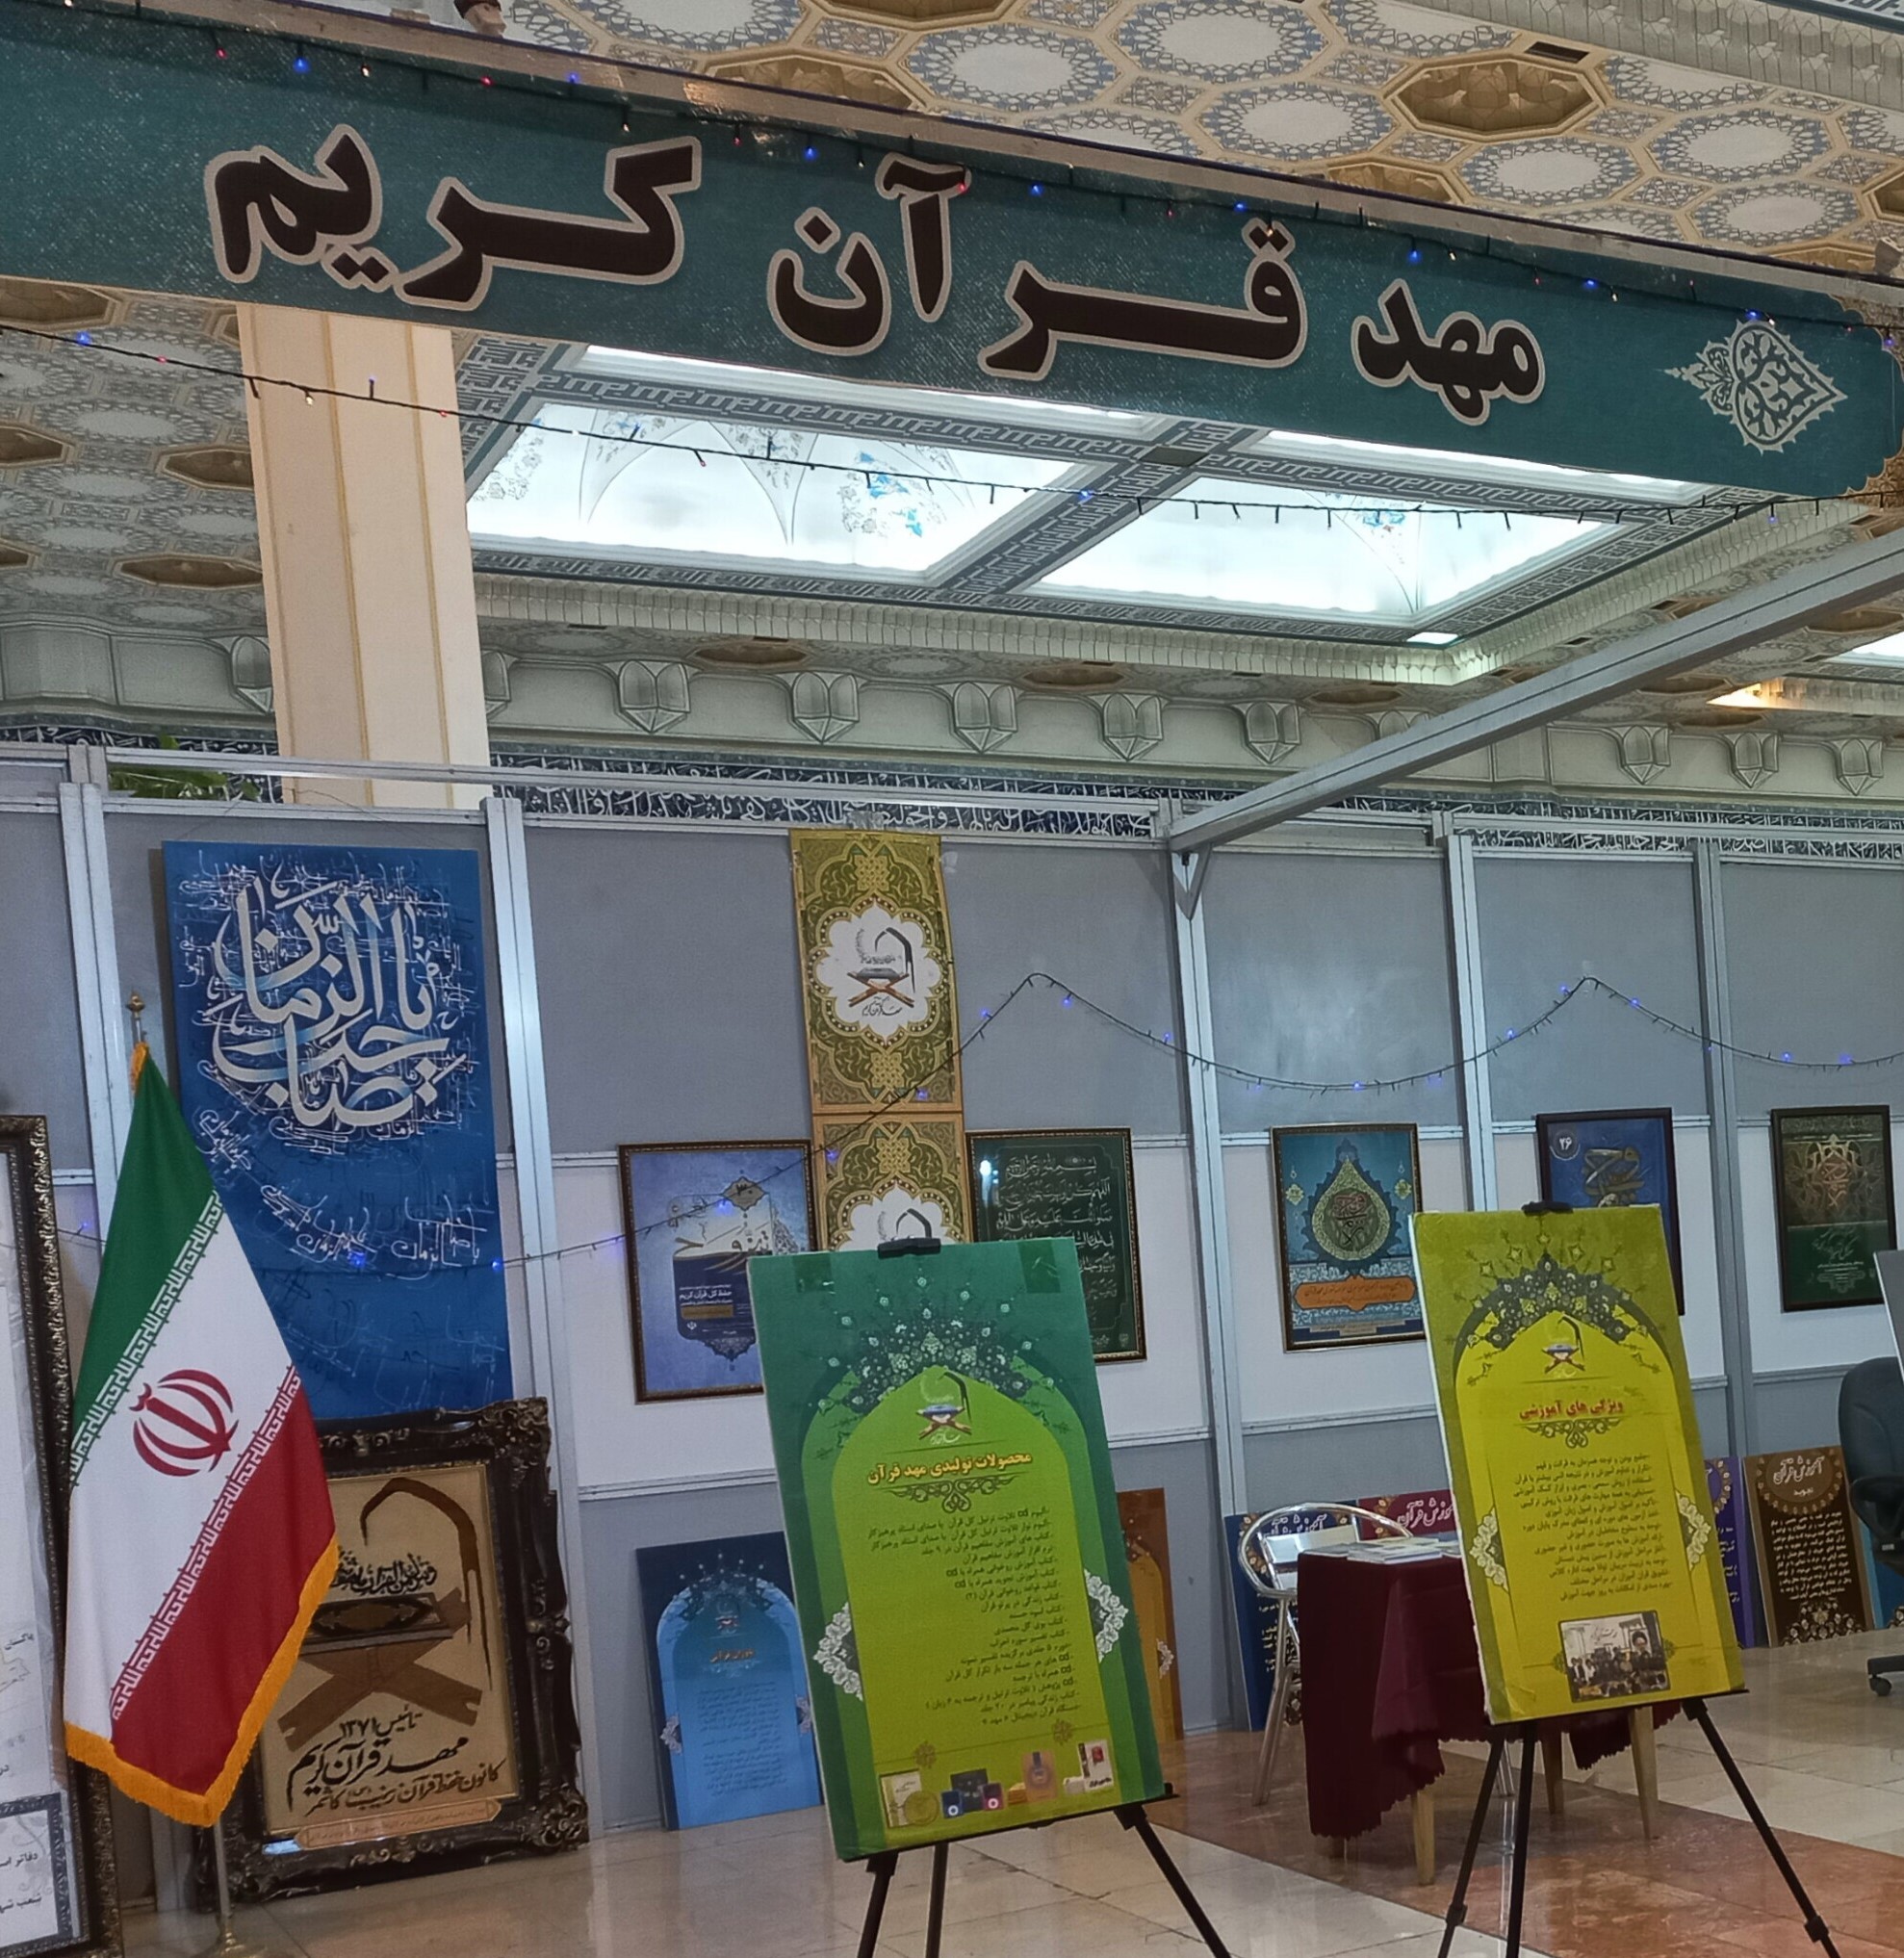 آشنایی با محصولات و خدمات مؤسسه کشوری مهد قرآن در نمایشگاه